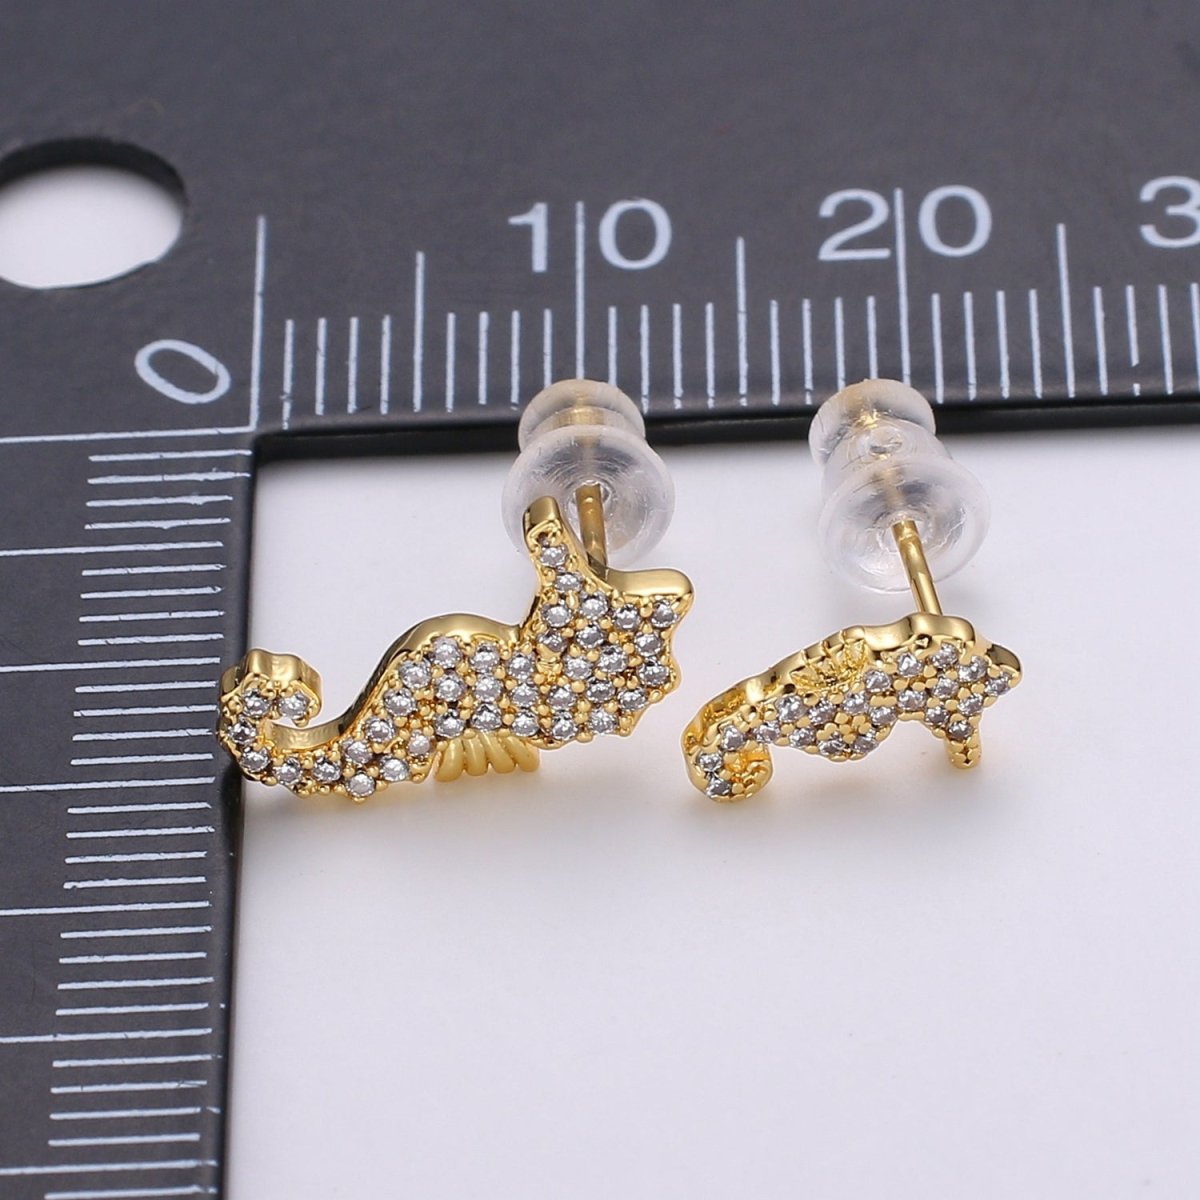 Mismatched Stud Earring Dainty Sea Horse Stud Earring, Gold Sea Horse Earring, Micro Pave Earrings Animal Studs Minimalist Stud Earrings Q-371 - DLUXCA